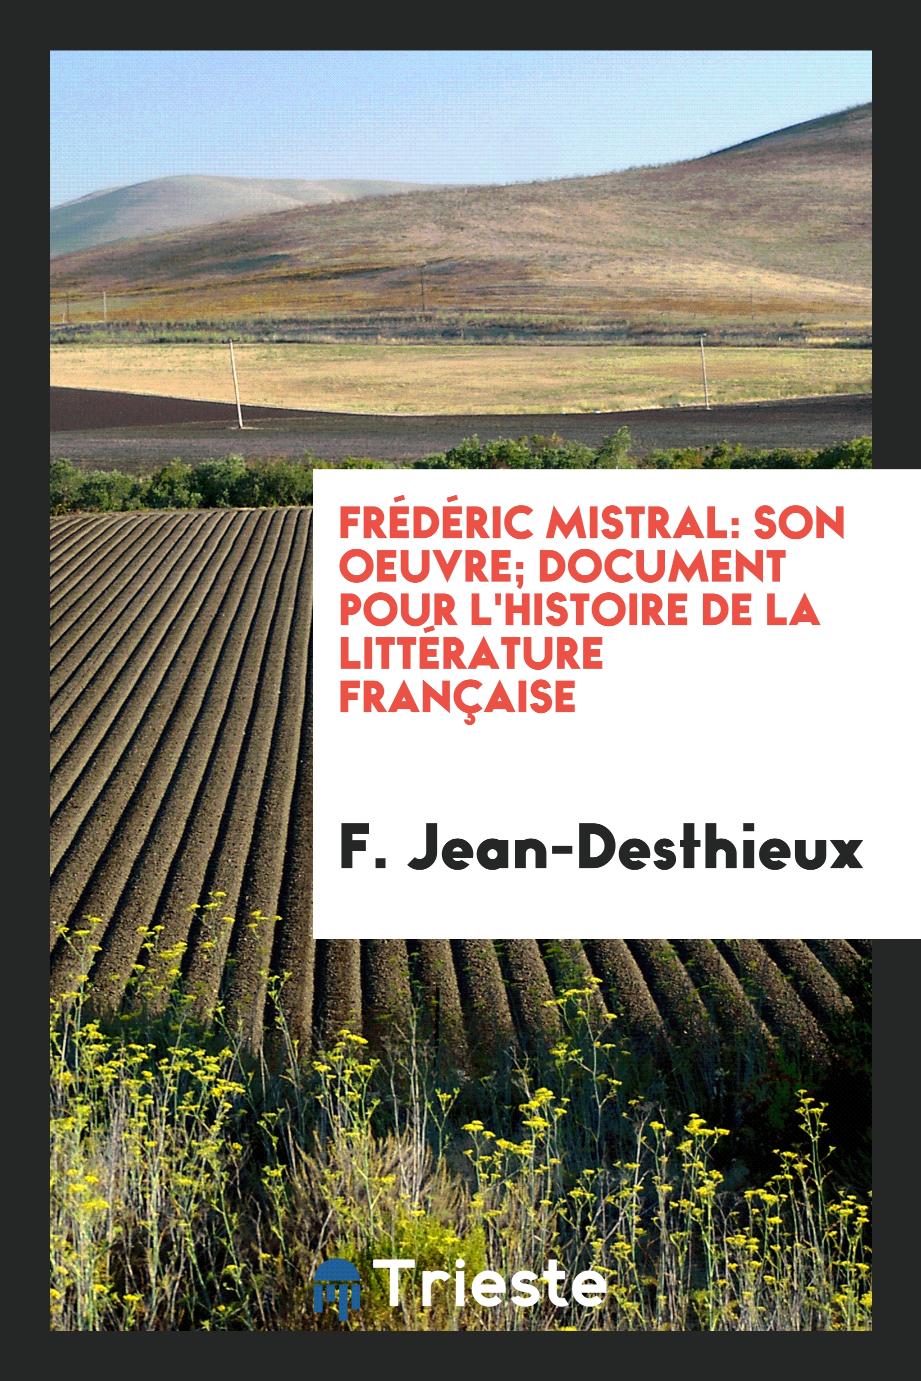 Frédéric Mistral: son oeuvre; document pour l'histoire de la littérature française